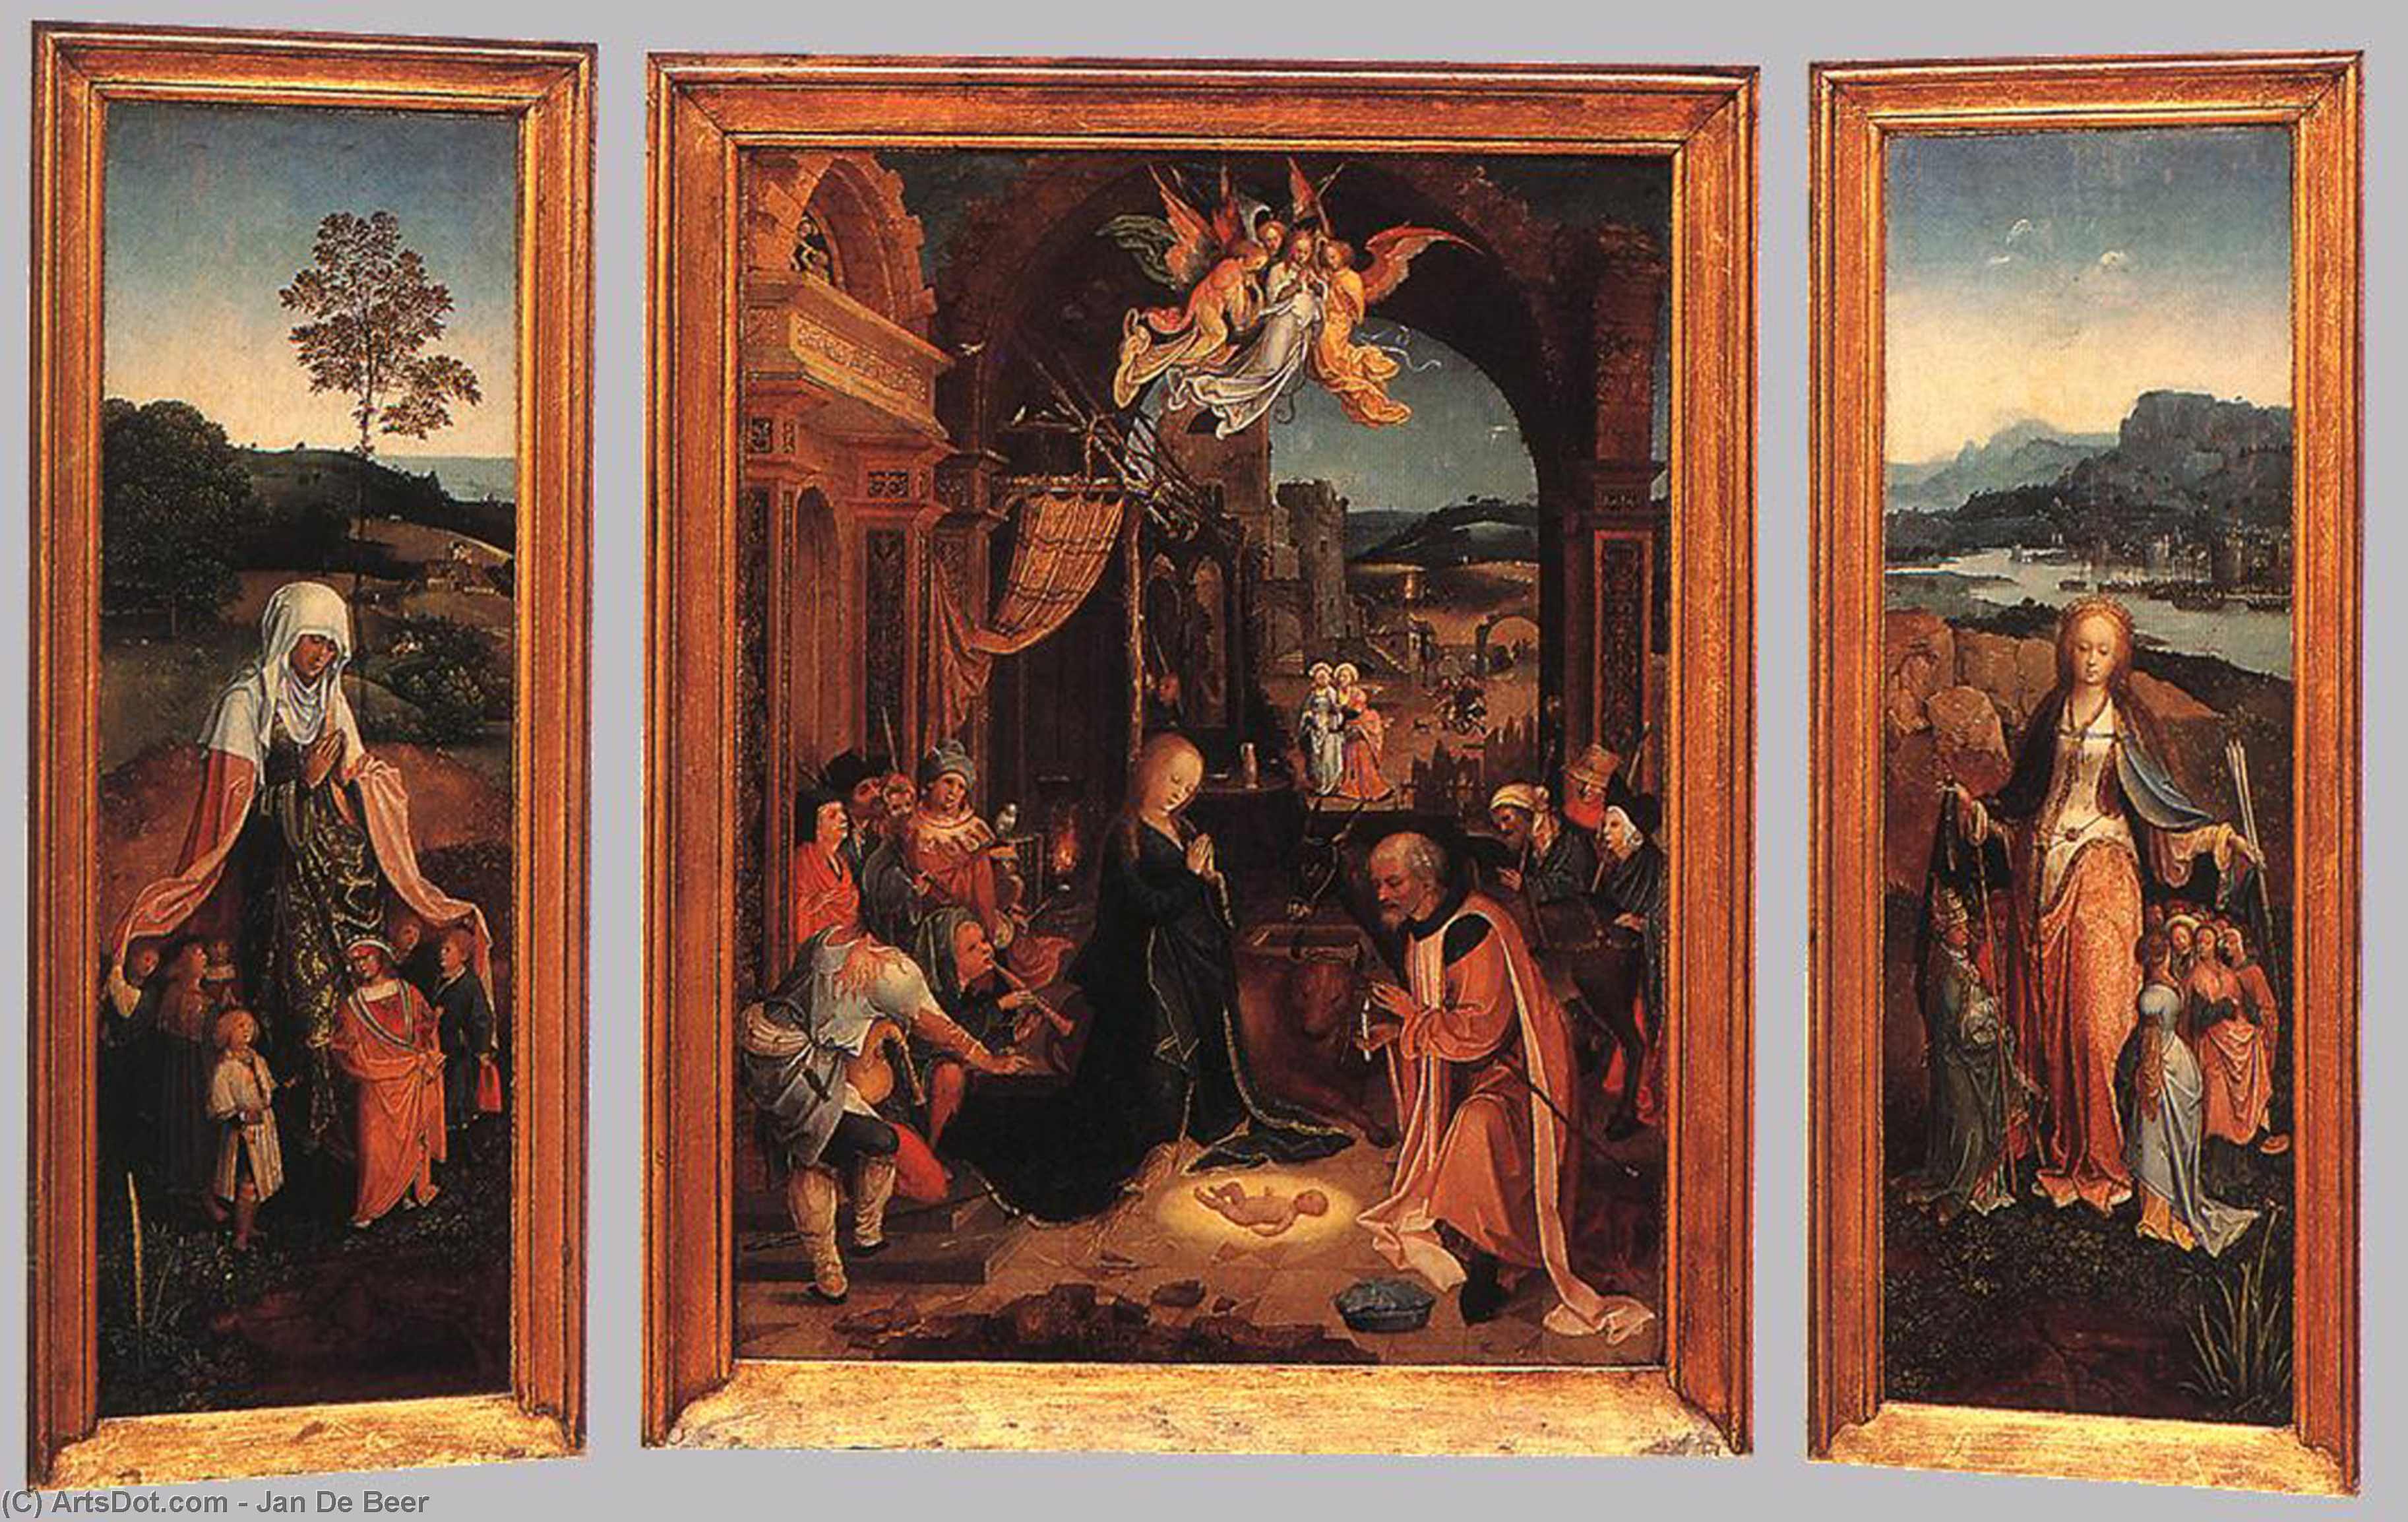 WikiOO.org - Encyclopedia of Fine Arts - Maleri, Artwork Jan De Beer - Triptych